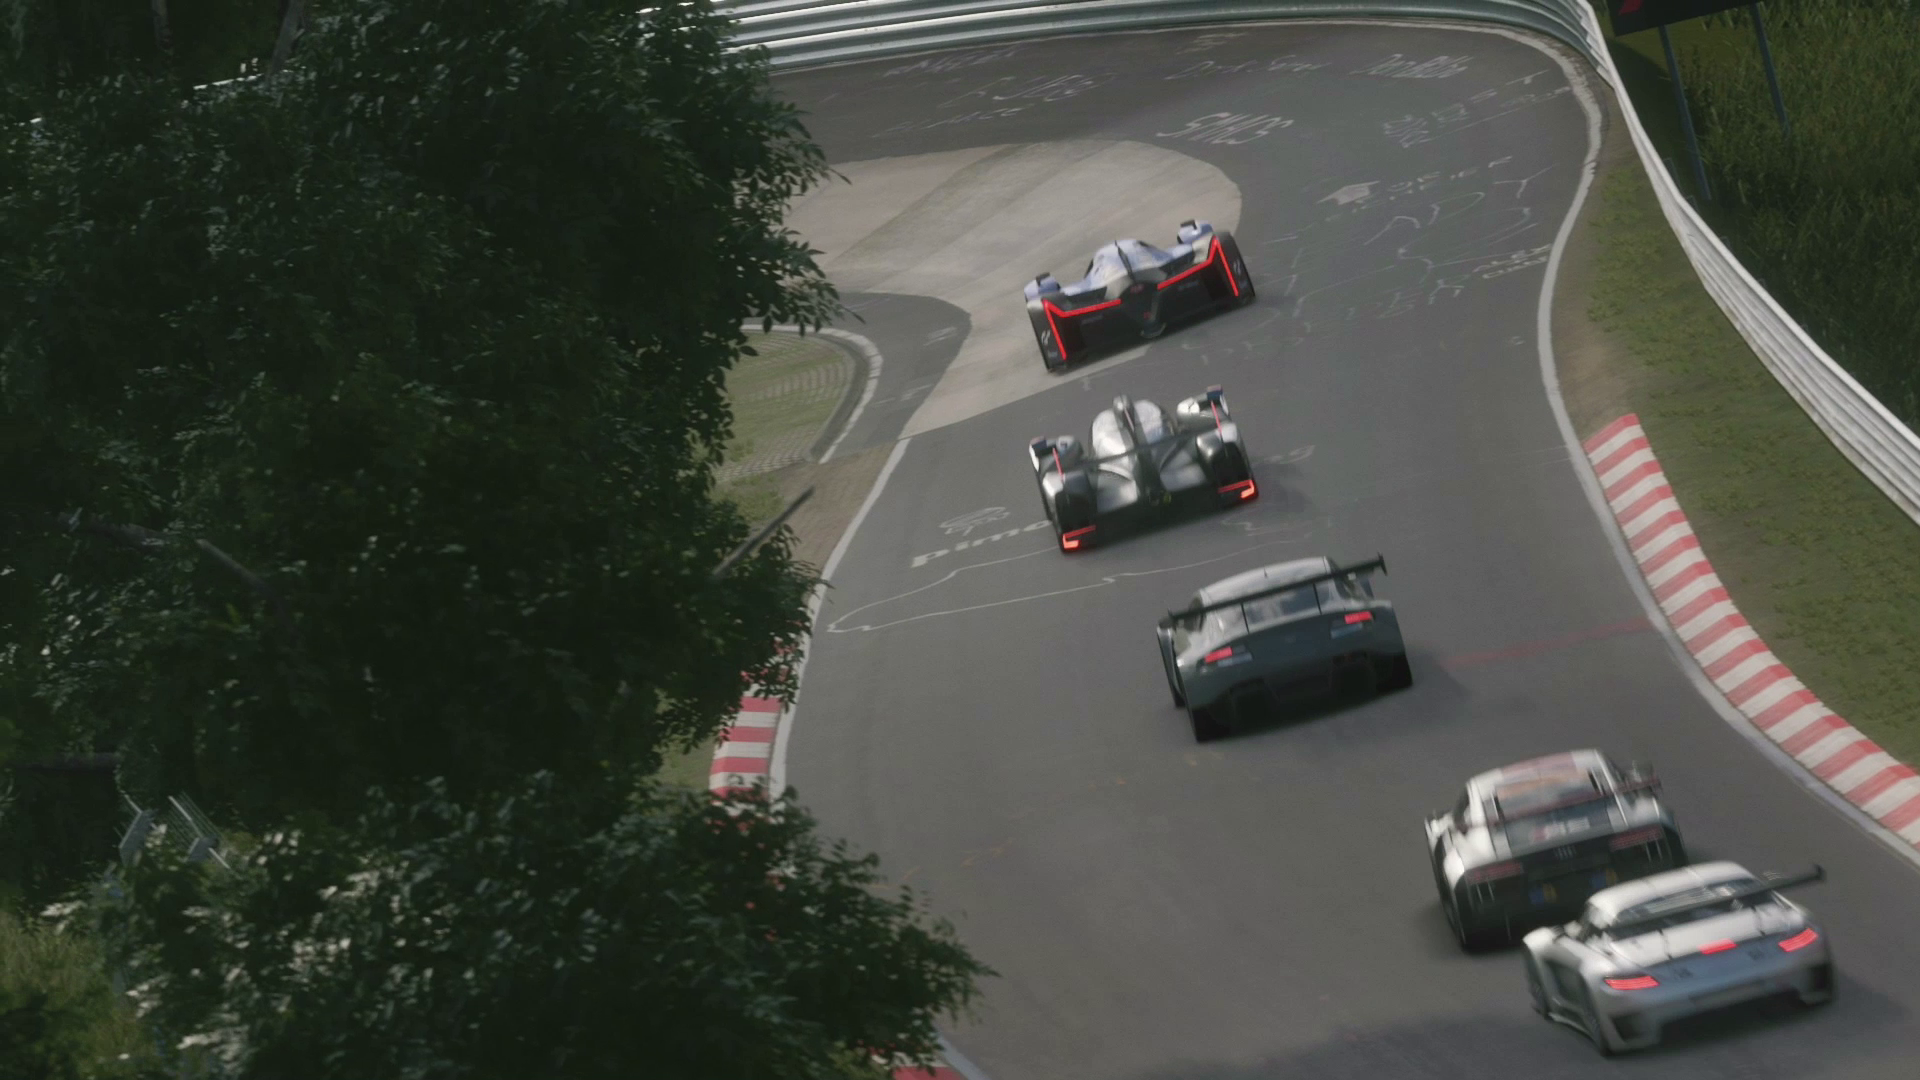 Bekijk de nieuwe trailer vol Gran Turismo Sport gameplay